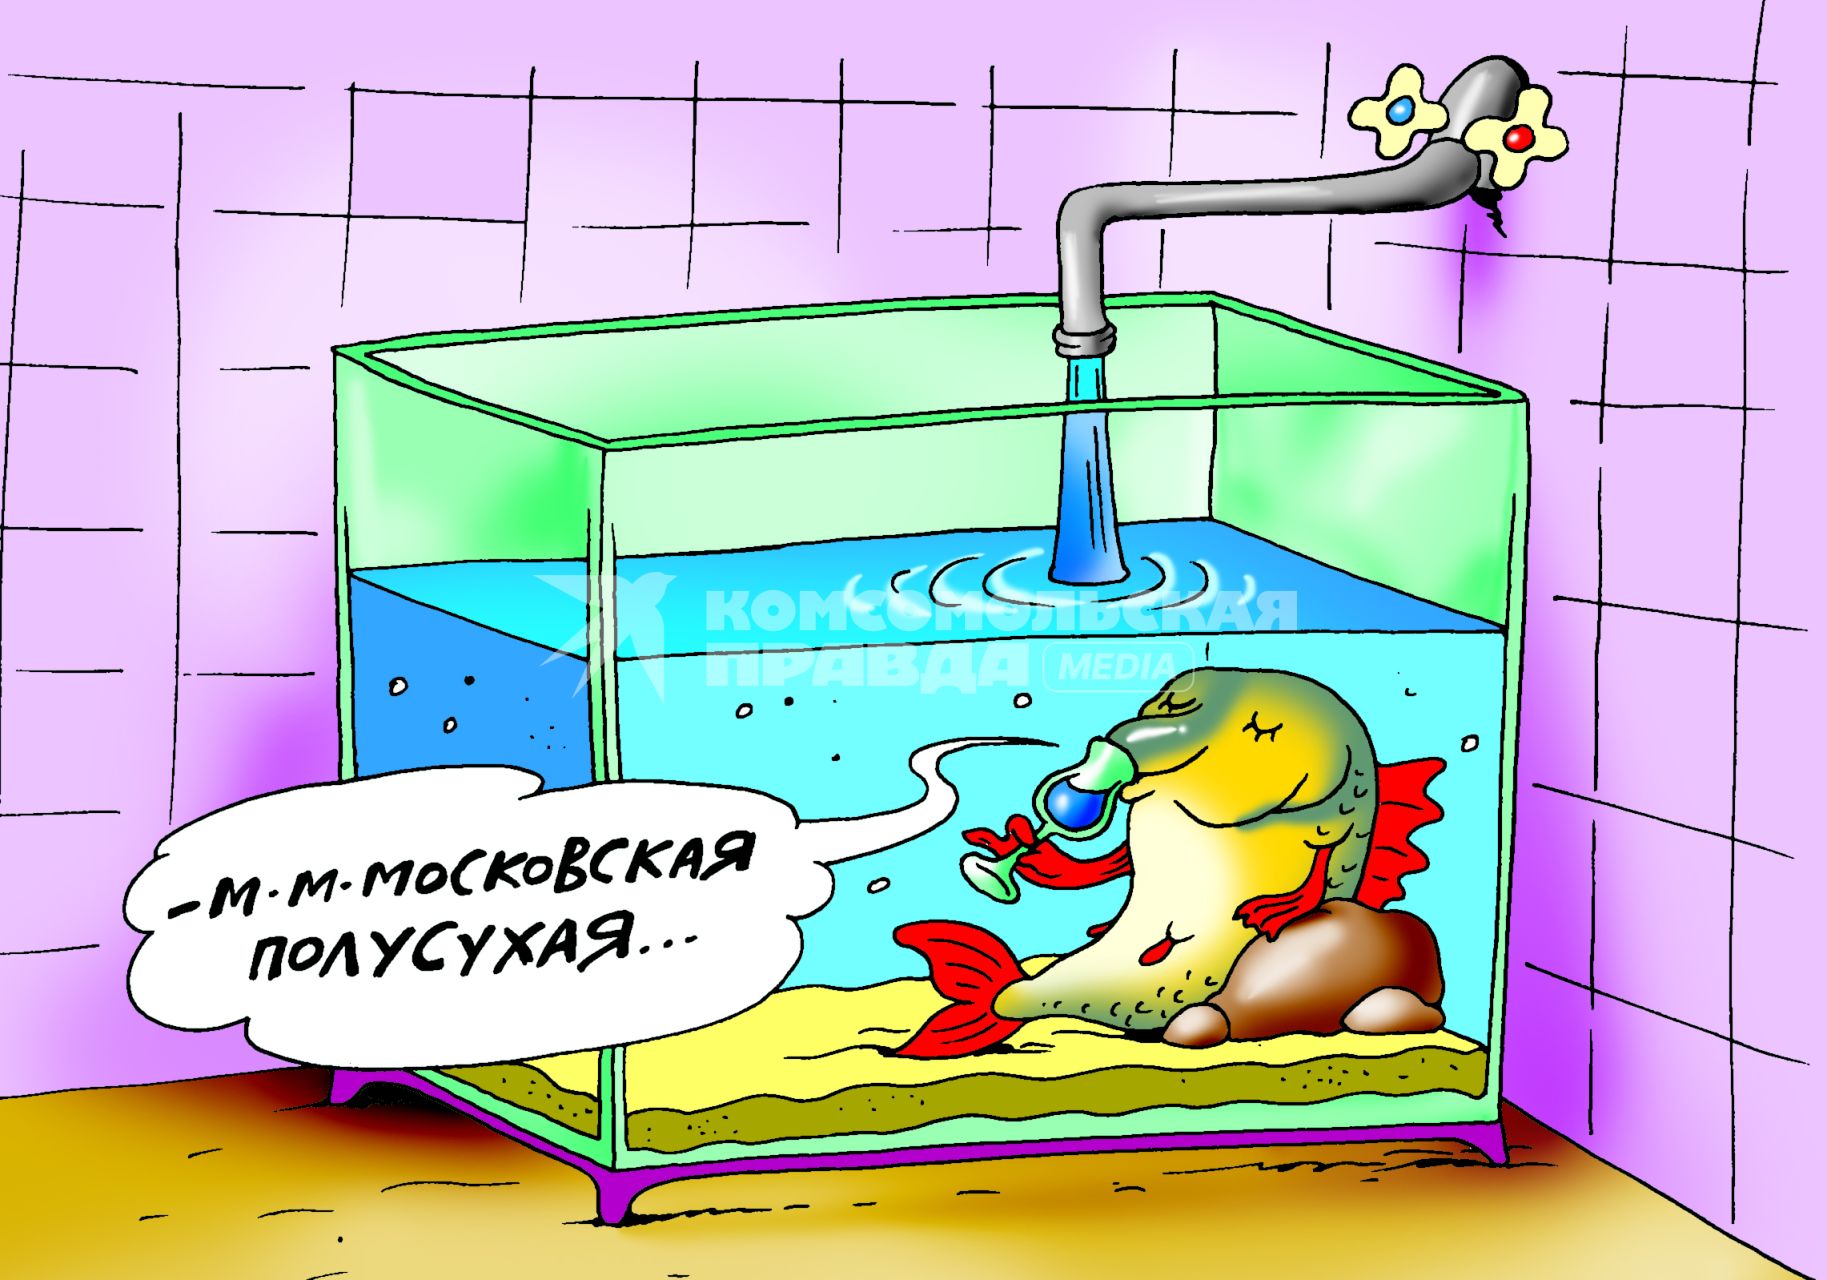 Карикатура на тему качества питьевой воды в Москве.